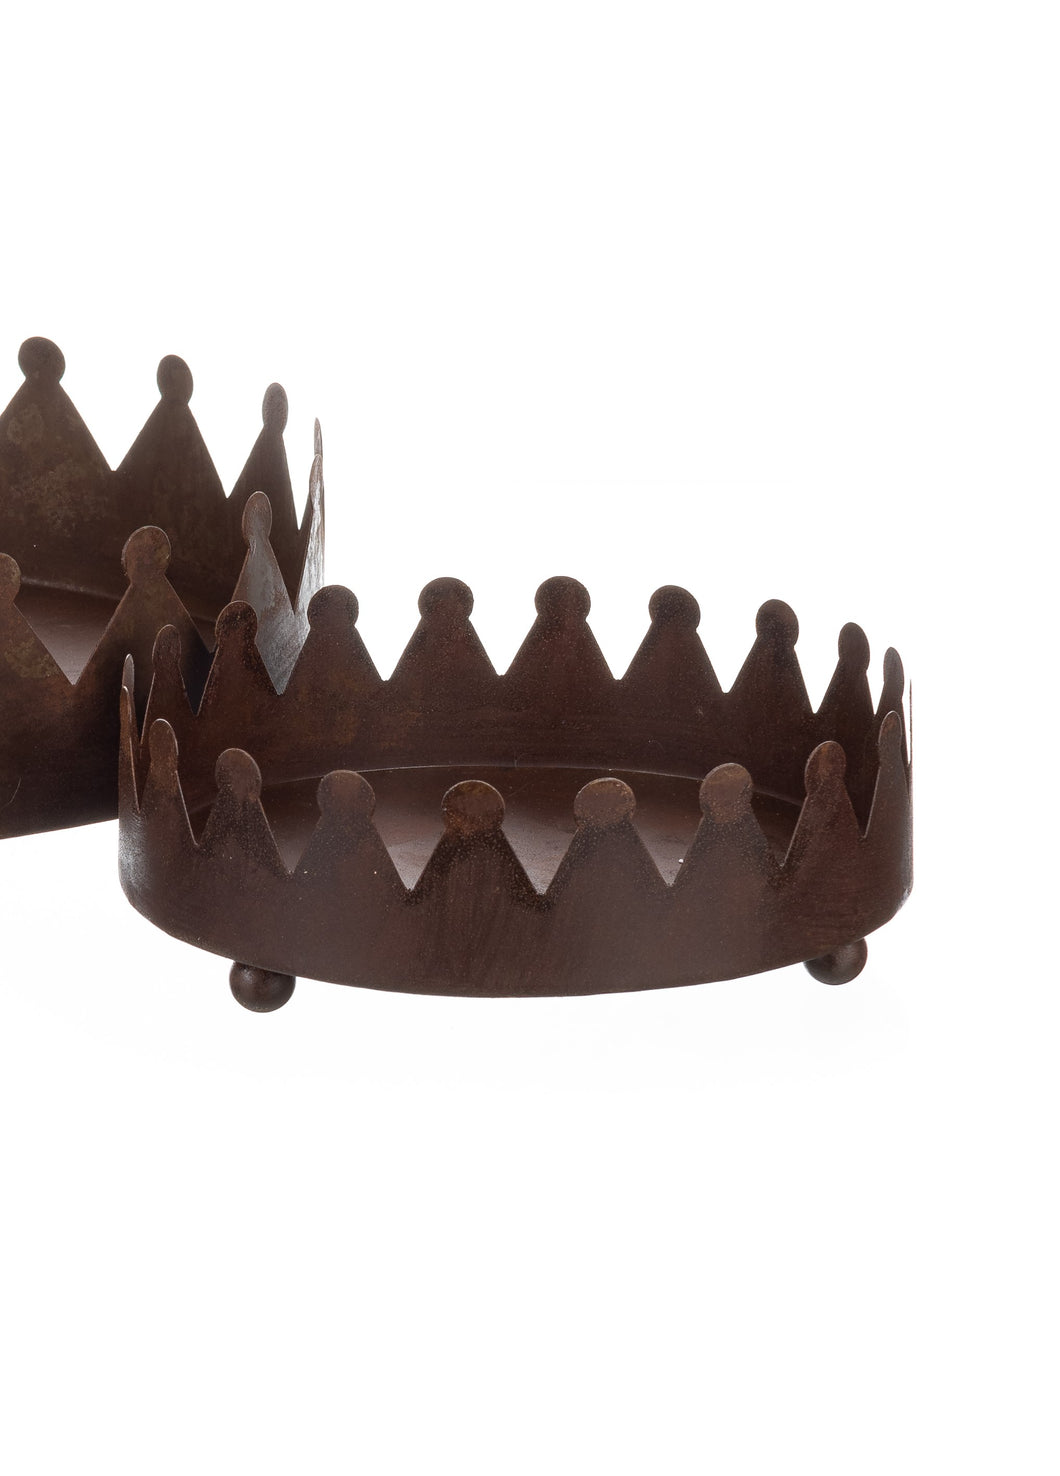 Rustic Crown Display Tray by Shoeless Joe - Medium 20cm